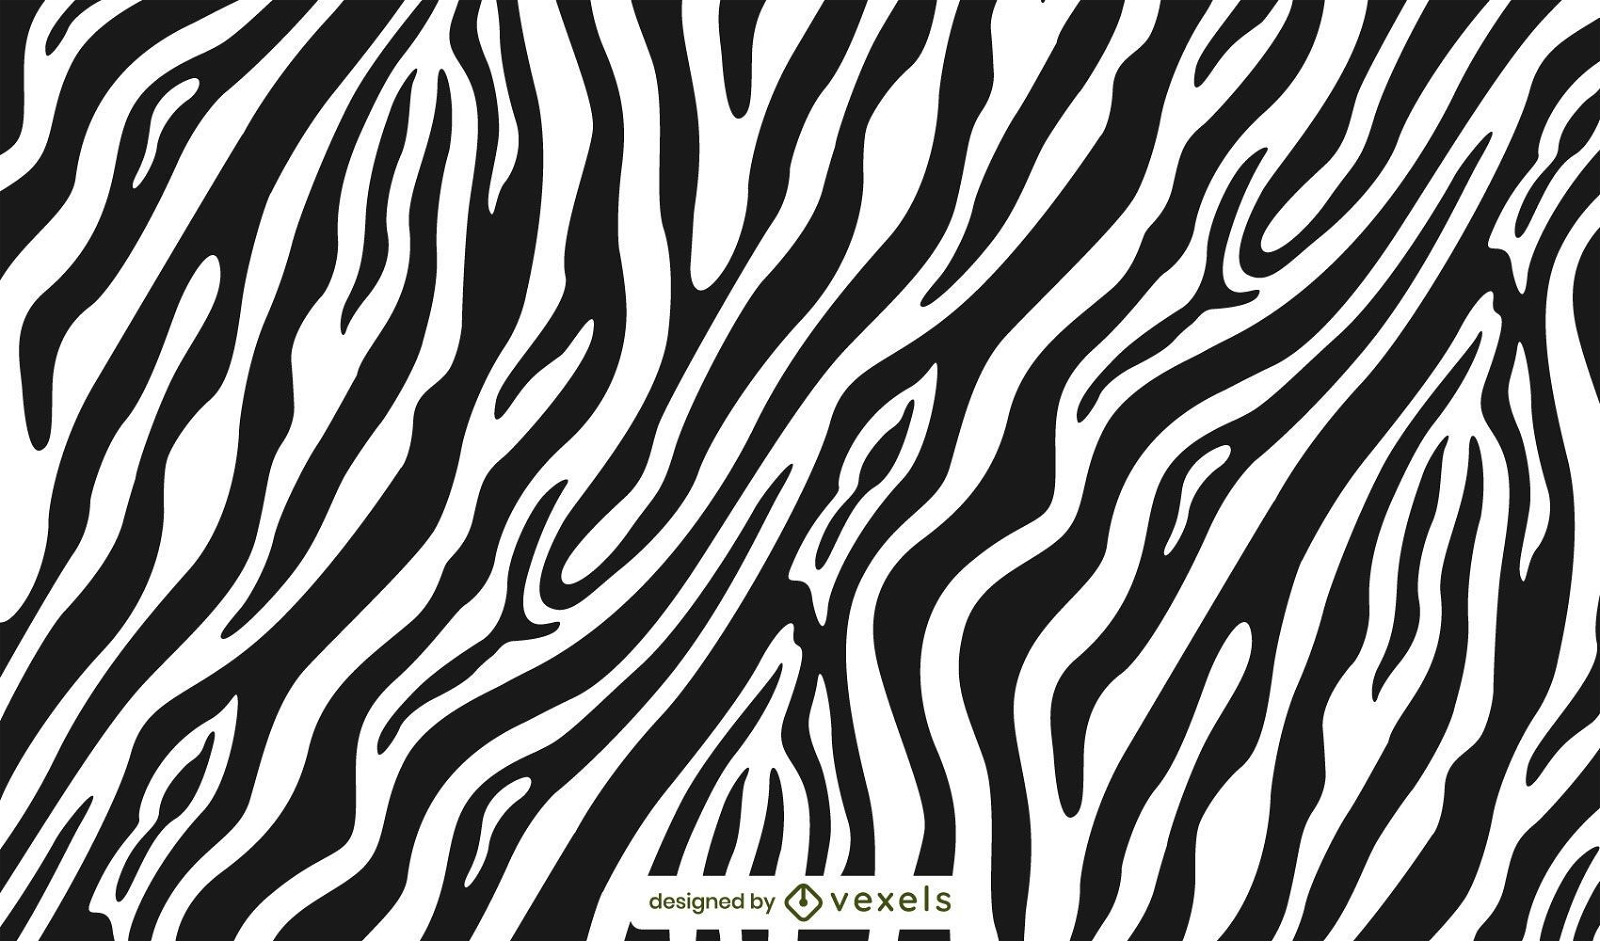 Desenho de estampa zebra